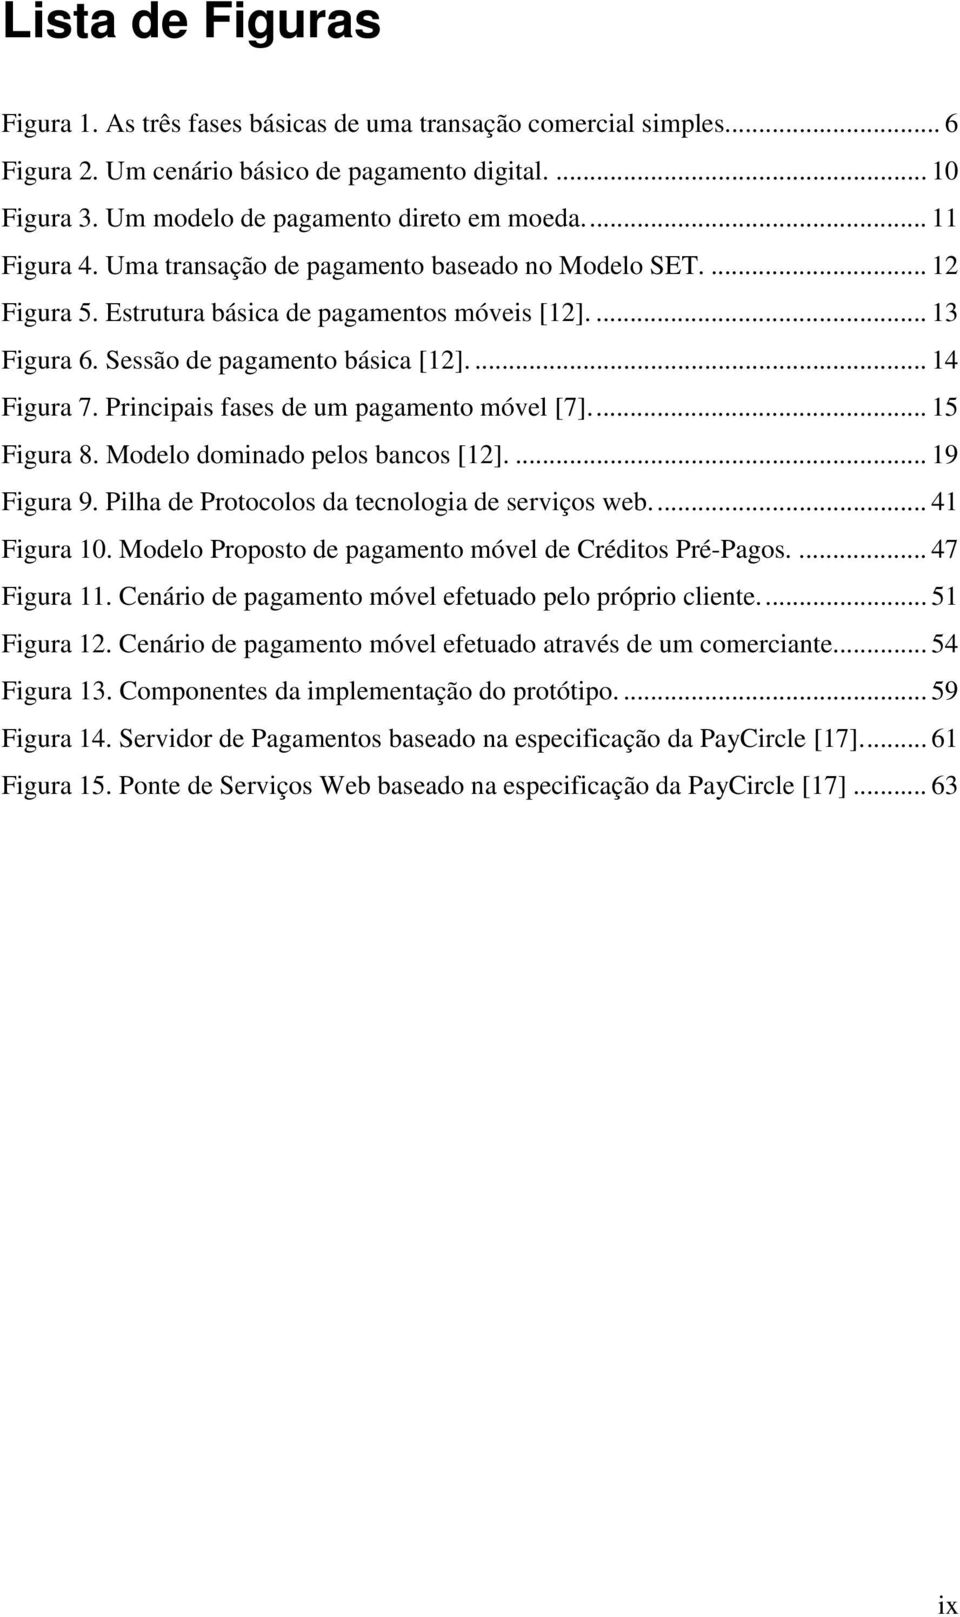 Principais fases de um pagamento móvel [7]... 15 Figura 8. Modelo dominado pelos bancos [12].... 19 Figura 9. Pilha de Protocolos da tecnologia de serviços web... 41 Figura 10.